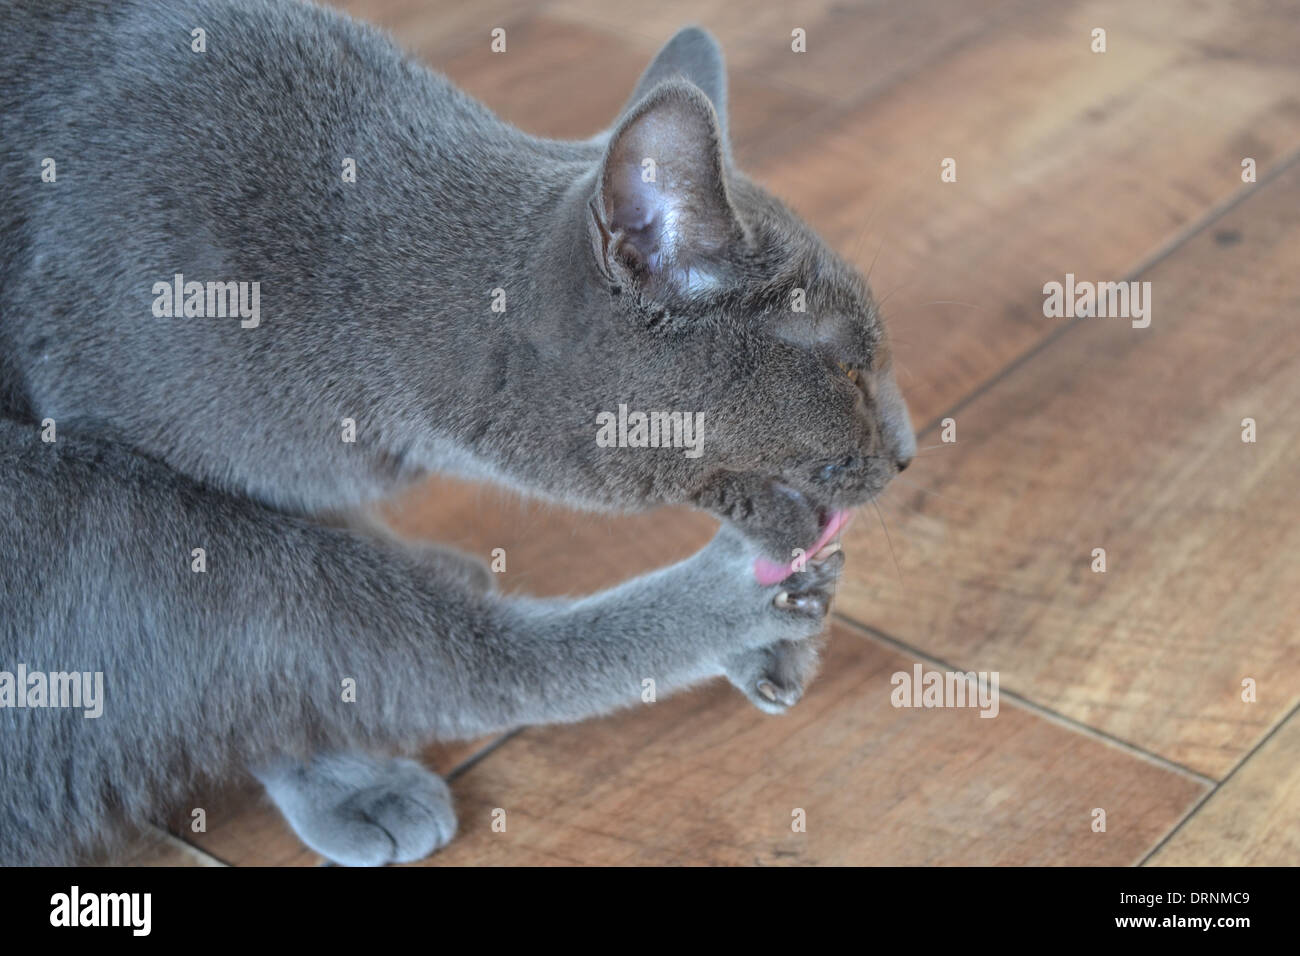 Russisch Blau Katze ihre Pfoten Reinigung Stockfoto